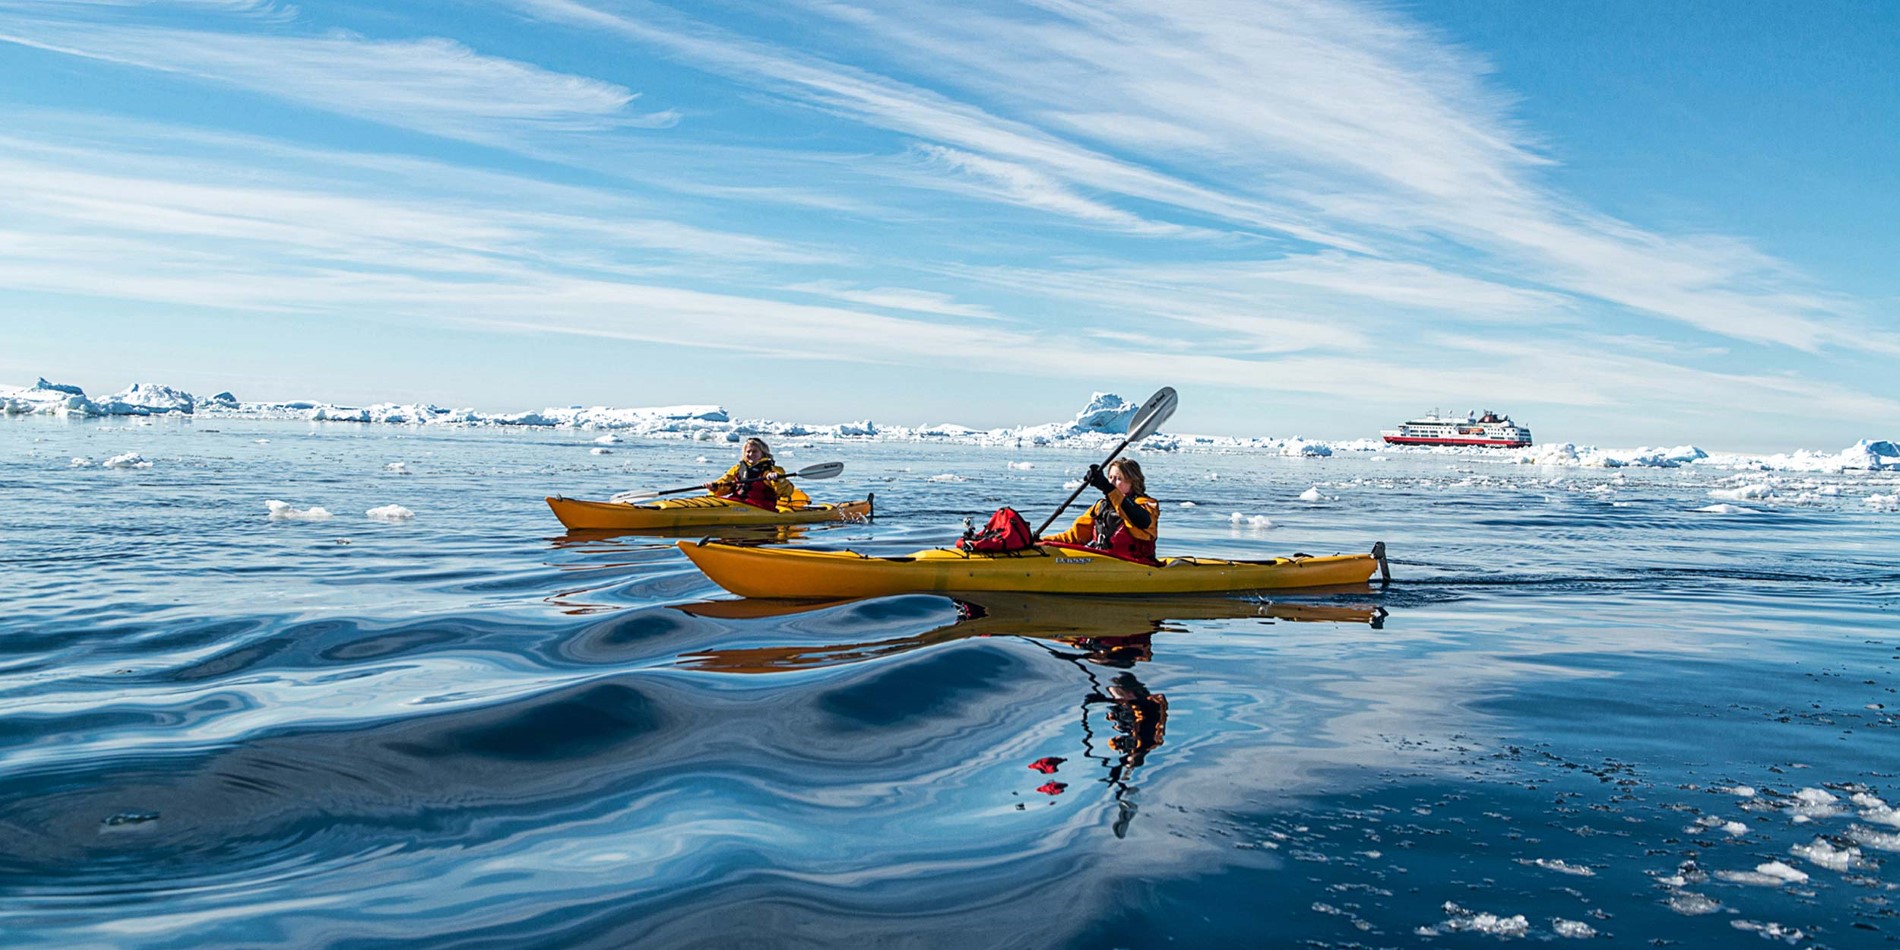 Explore the Antarctic waters in a kayak